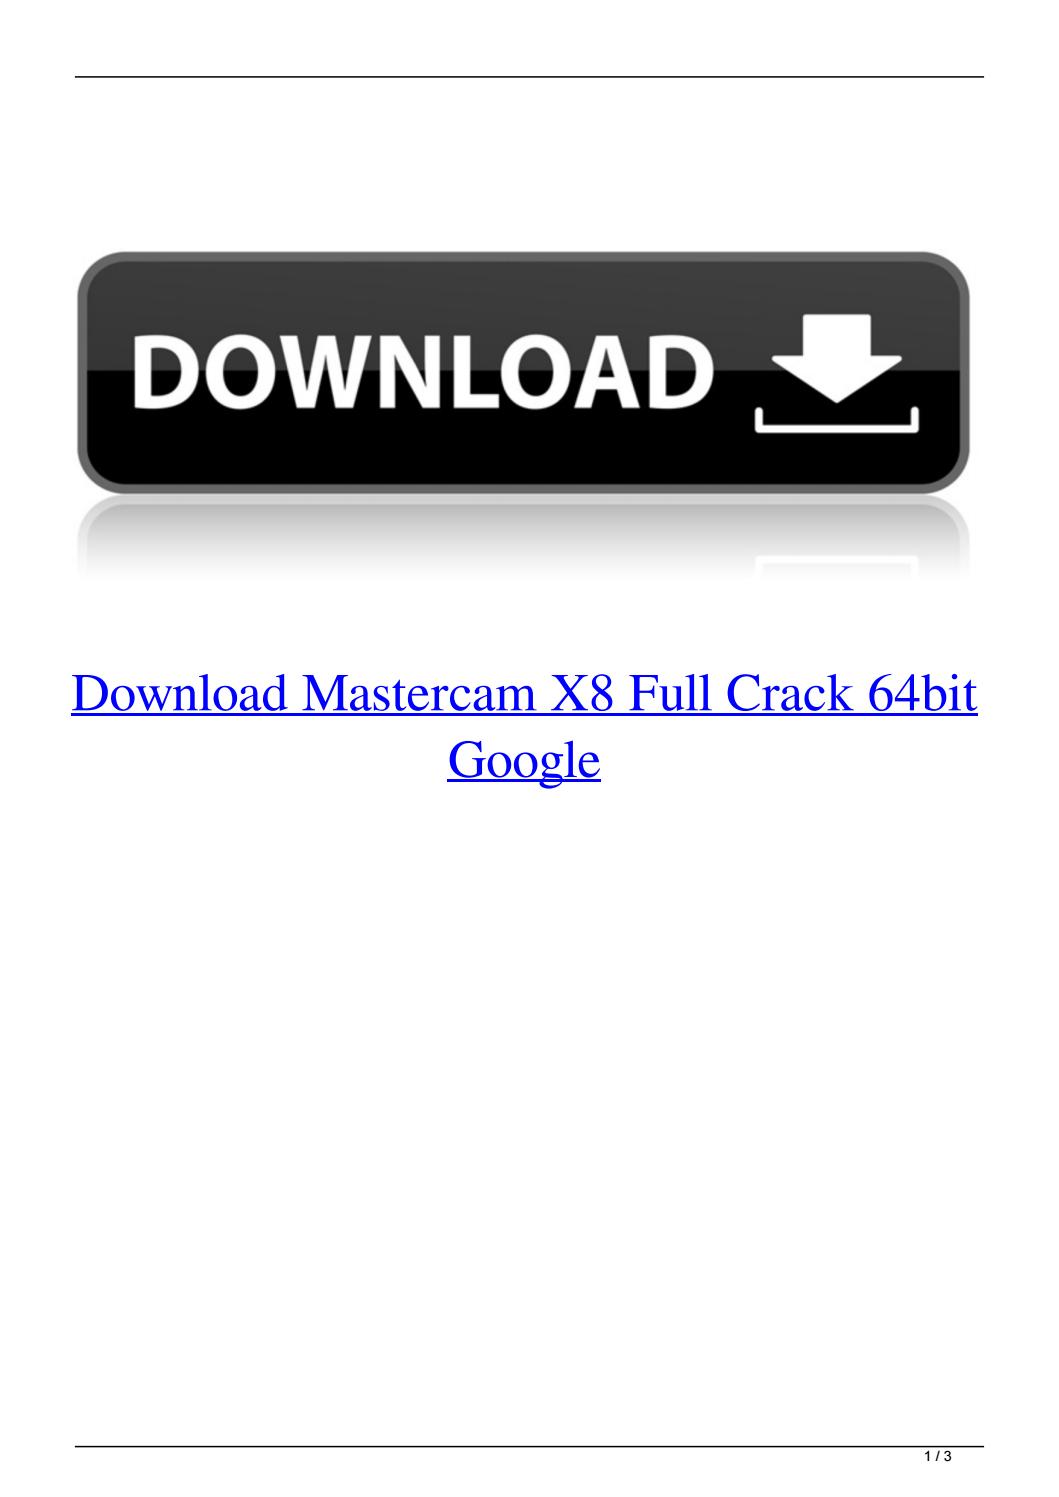 download mastercam 2019 full crack 64bit